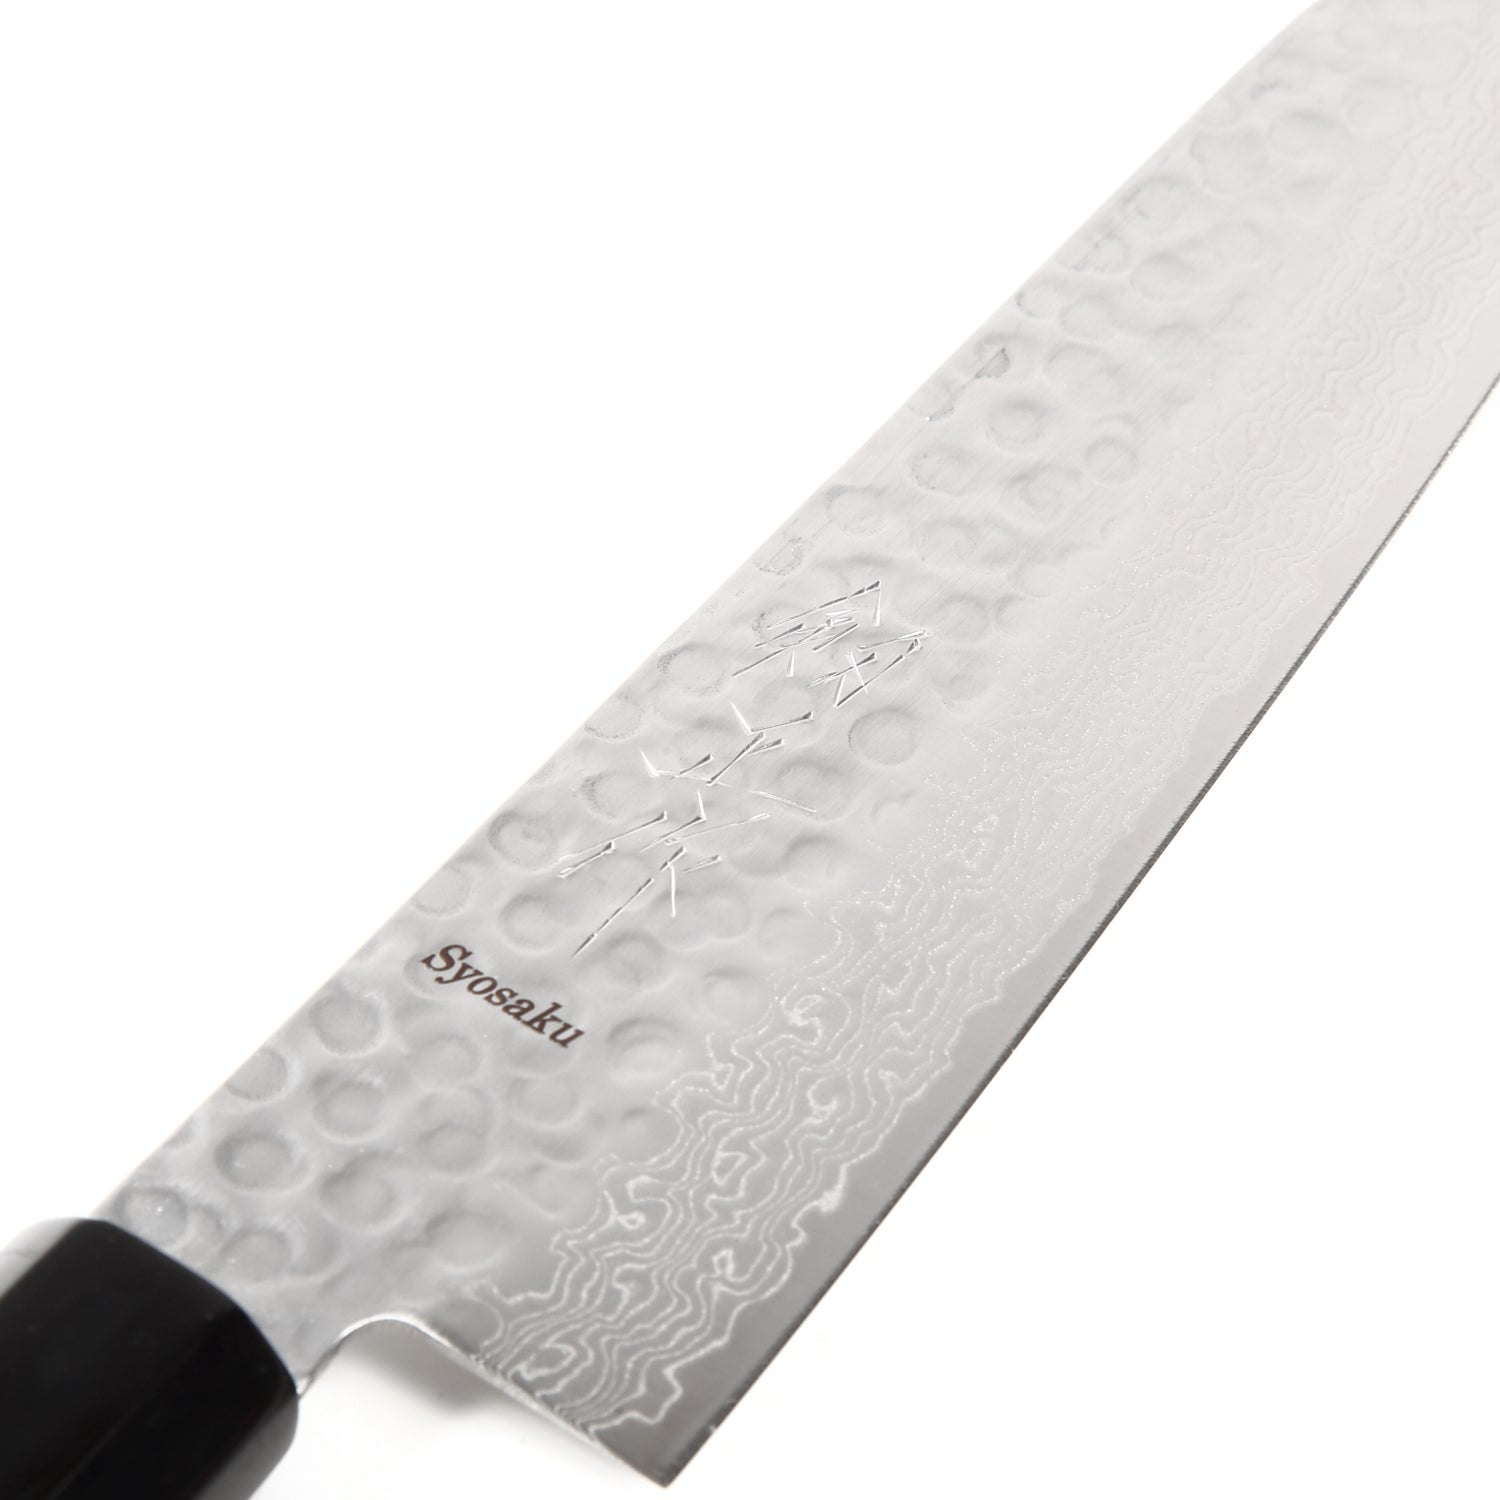 Curved Slicer (Butcher) Knife 10 Inch - Damascus Japanese VG10 Super S –